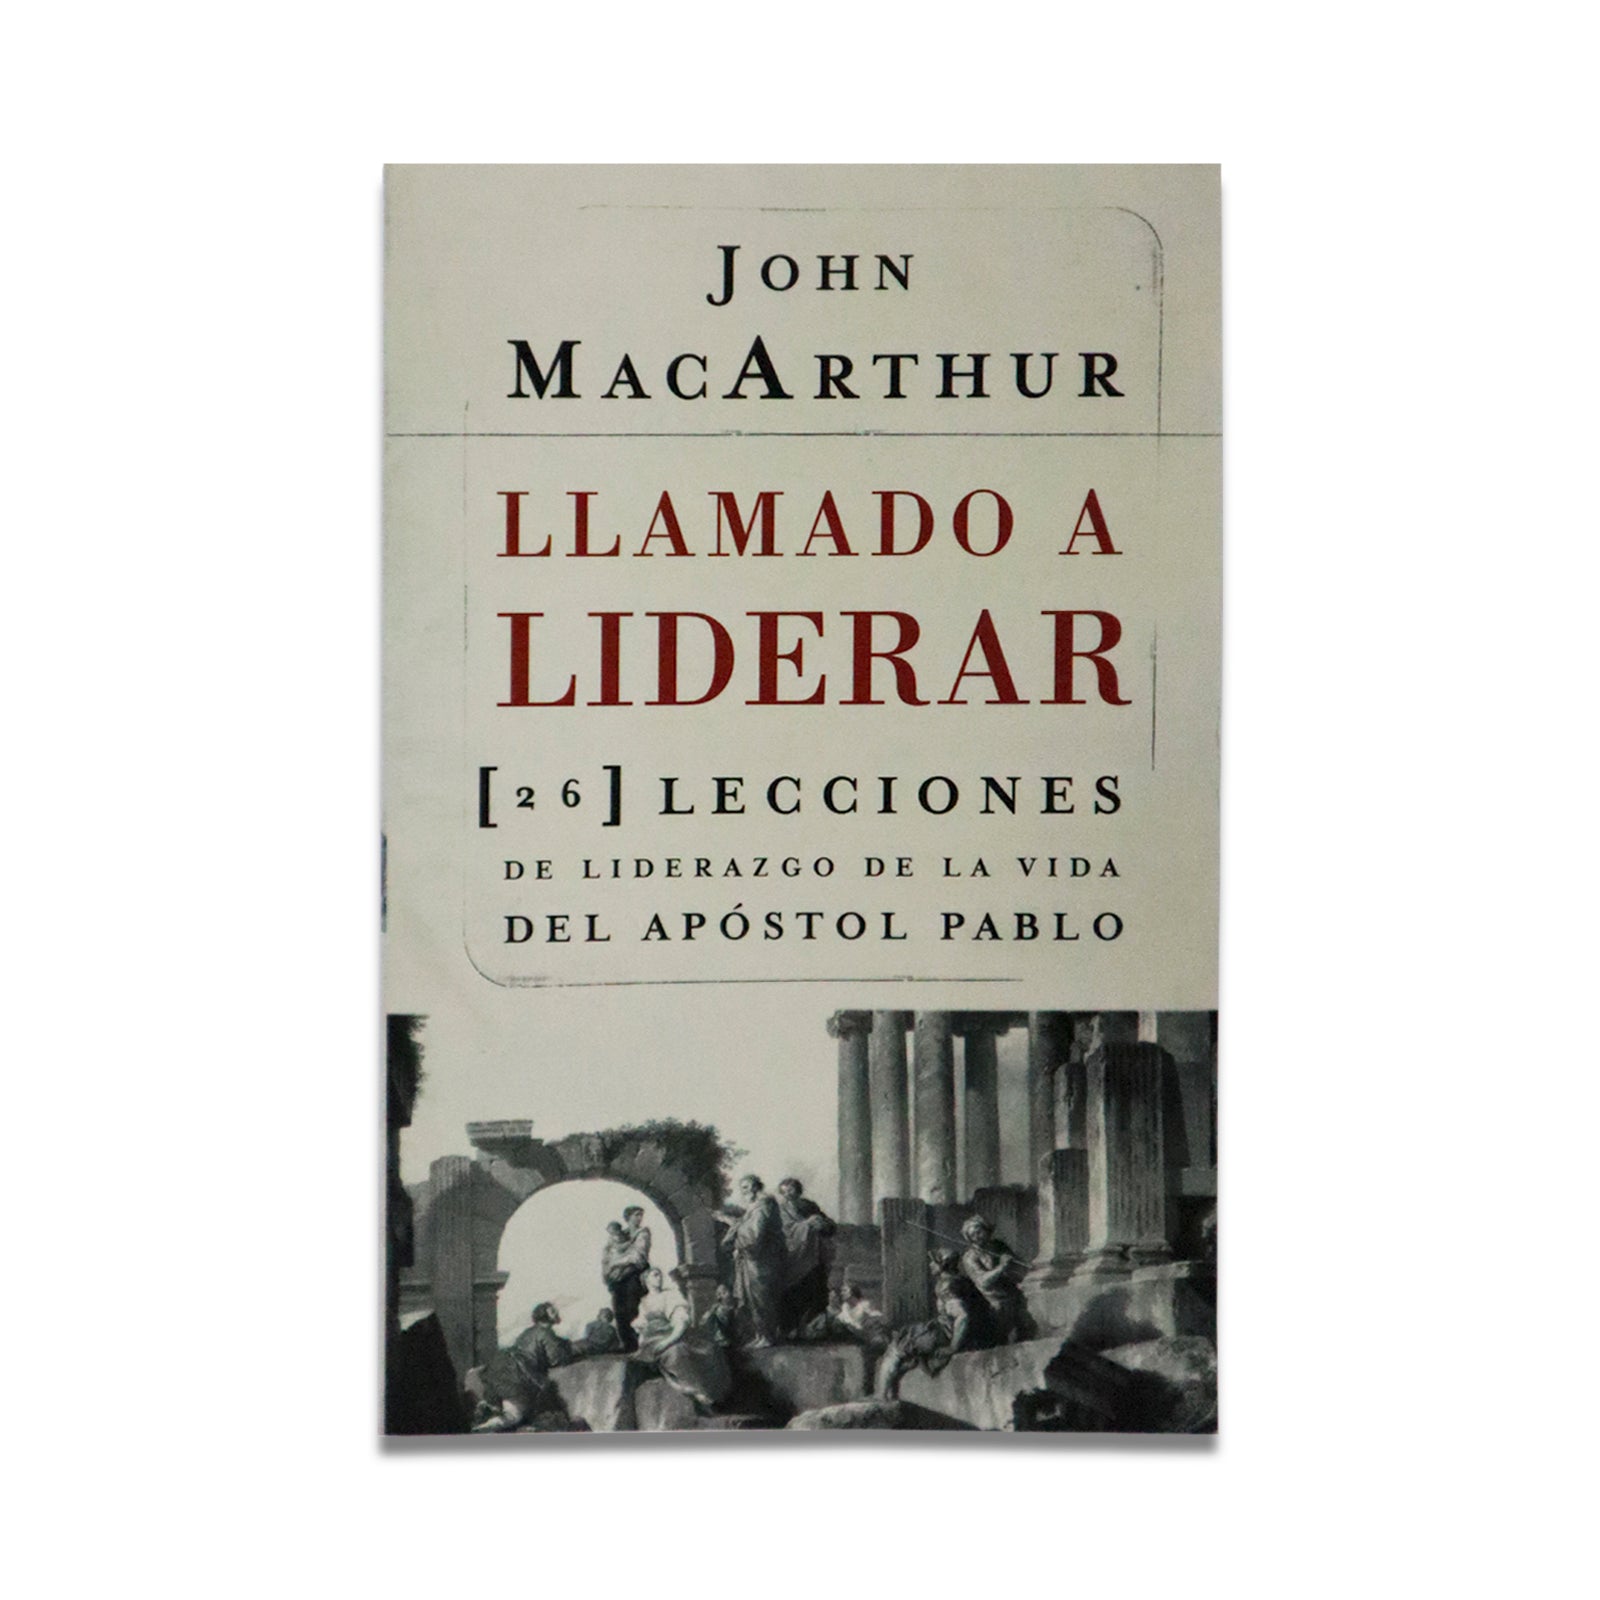 LLAMADO A LIDERAR: JOHN MACARTHUR